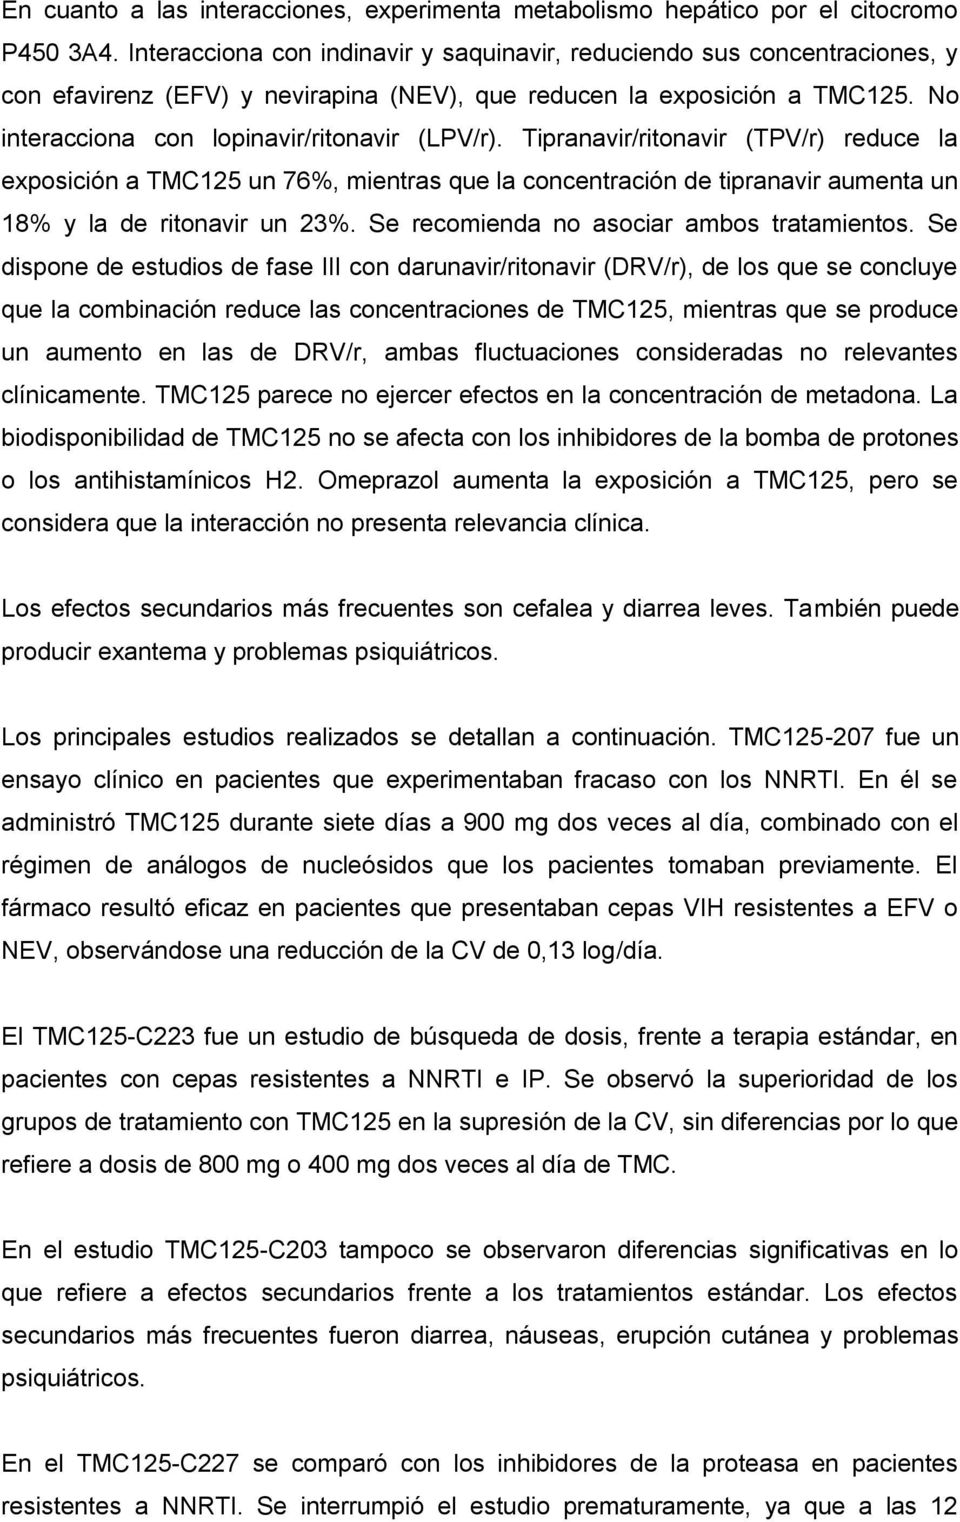 Tipranavir/ritonavir (TPV/r) reduce la exposición a TMC125 un 76%, mientras que la concentración de tipranavir aumenta un 18% y la de ritonavir un 23%. Se recomienda no asociar ambos tratamientos.